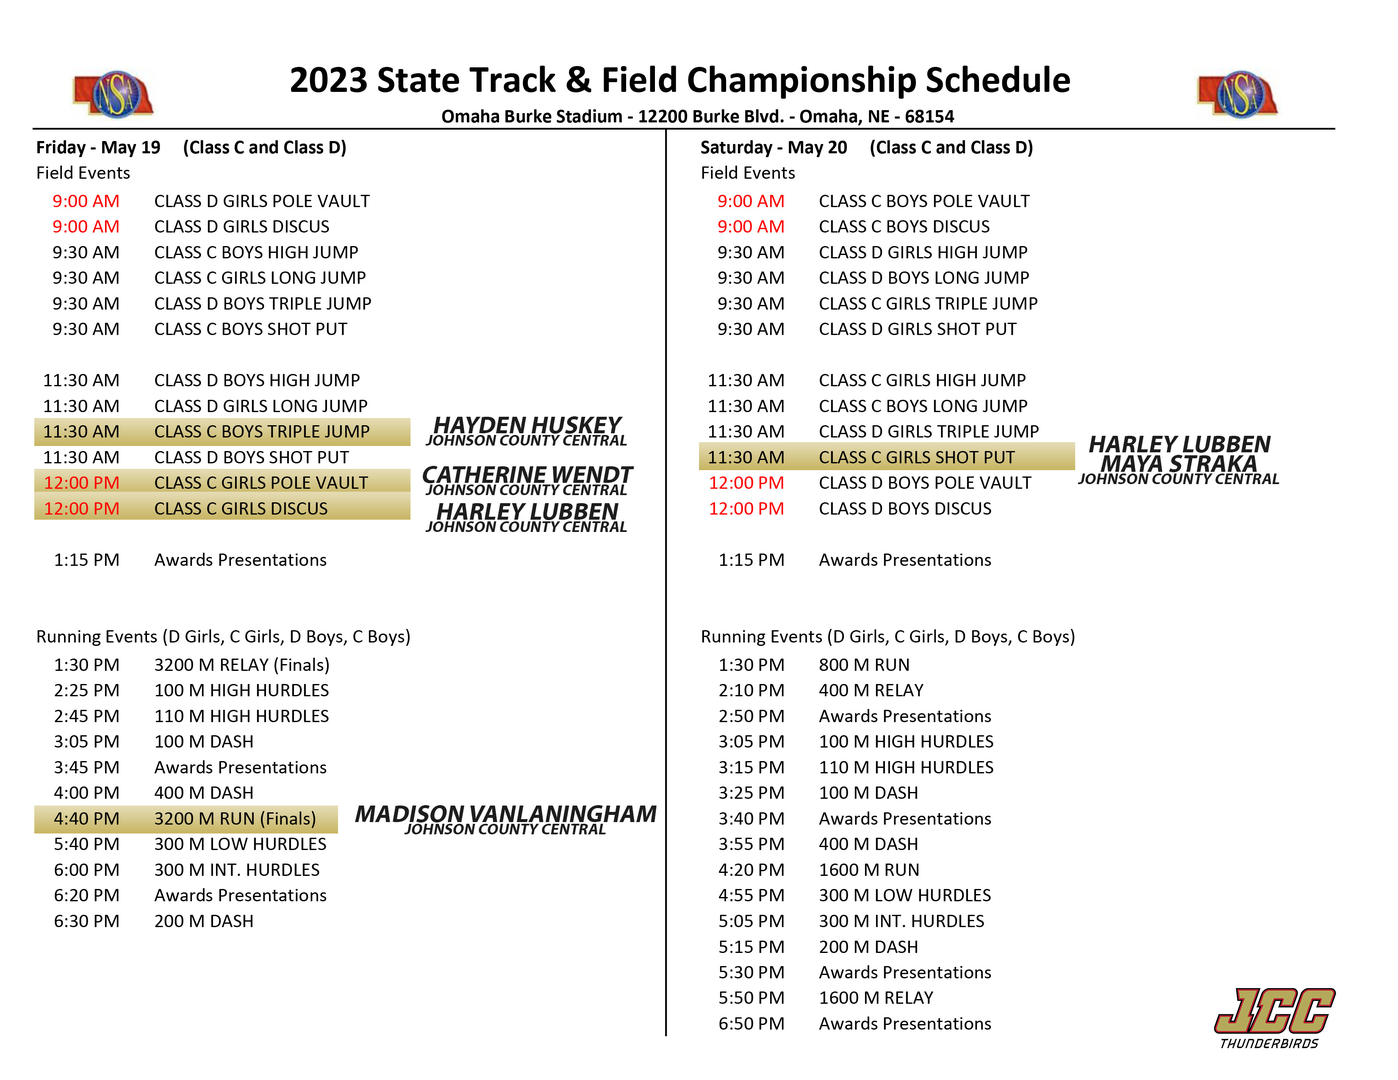 JCC State Track Schedule